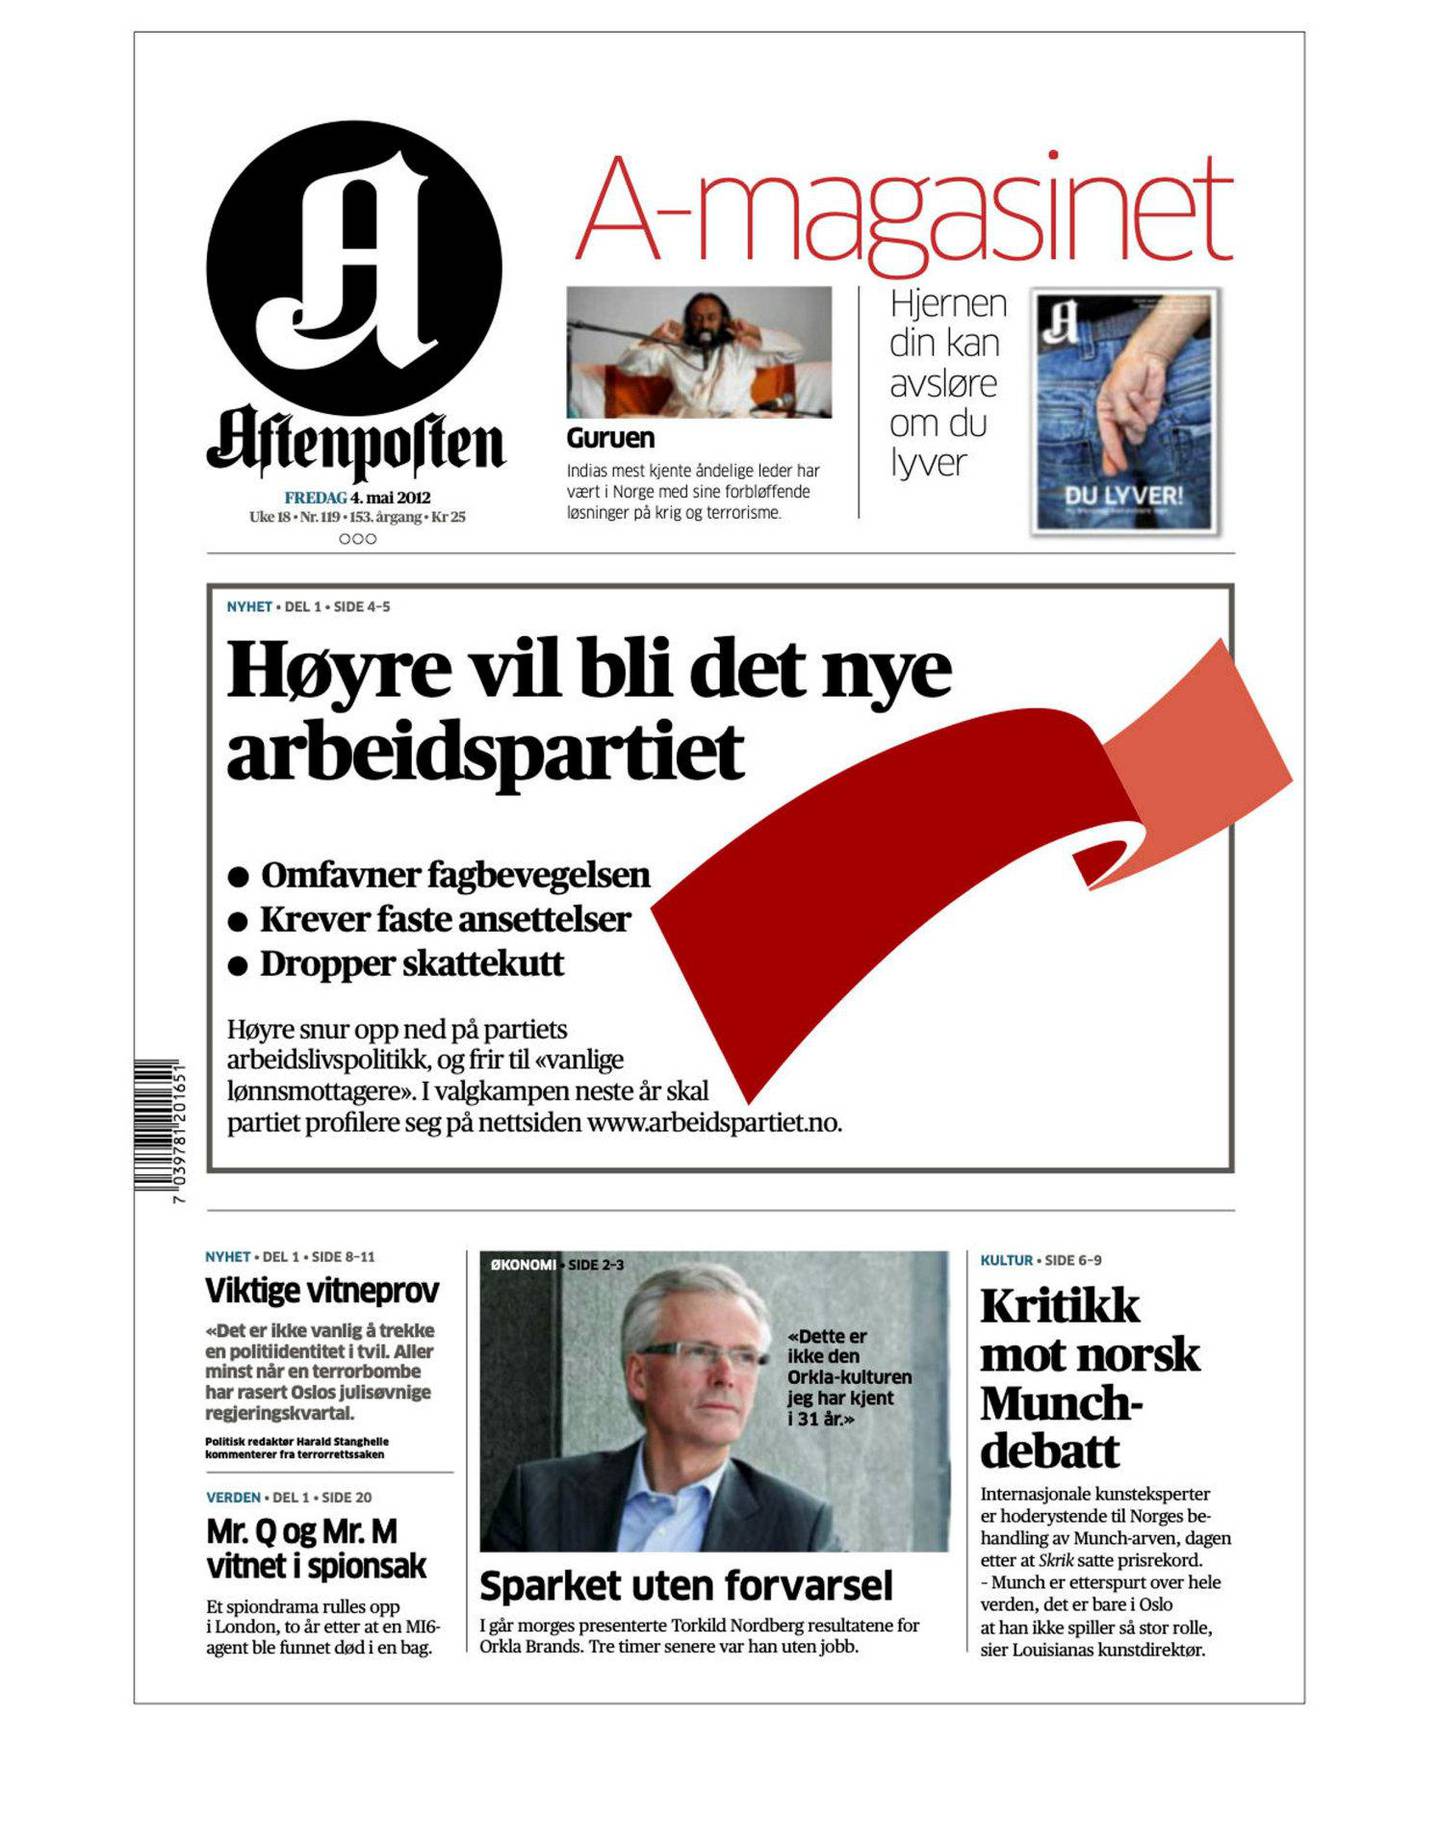 Faksimile av Aftenpostens forside 4. mai 2012, der Torbjørn Røe Isaksen lanserte www.arbeidspartiet.no.